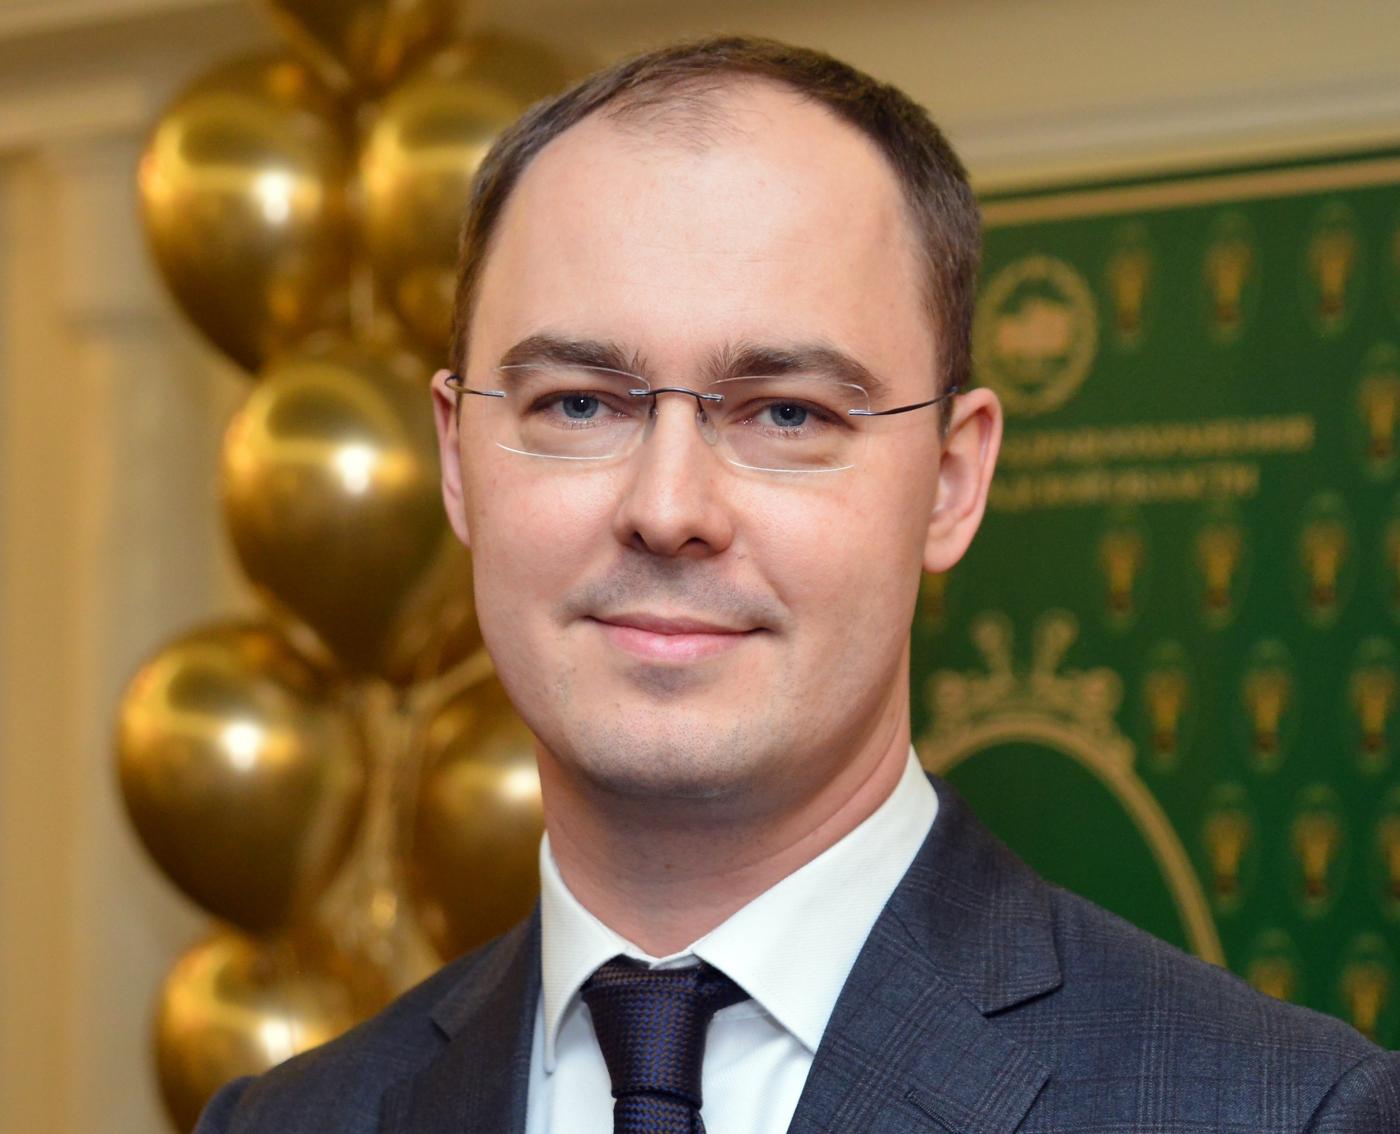 Министр здравоохранения региона Александр Кравченко поздравил жителей региона с Новым годом и Рождеством